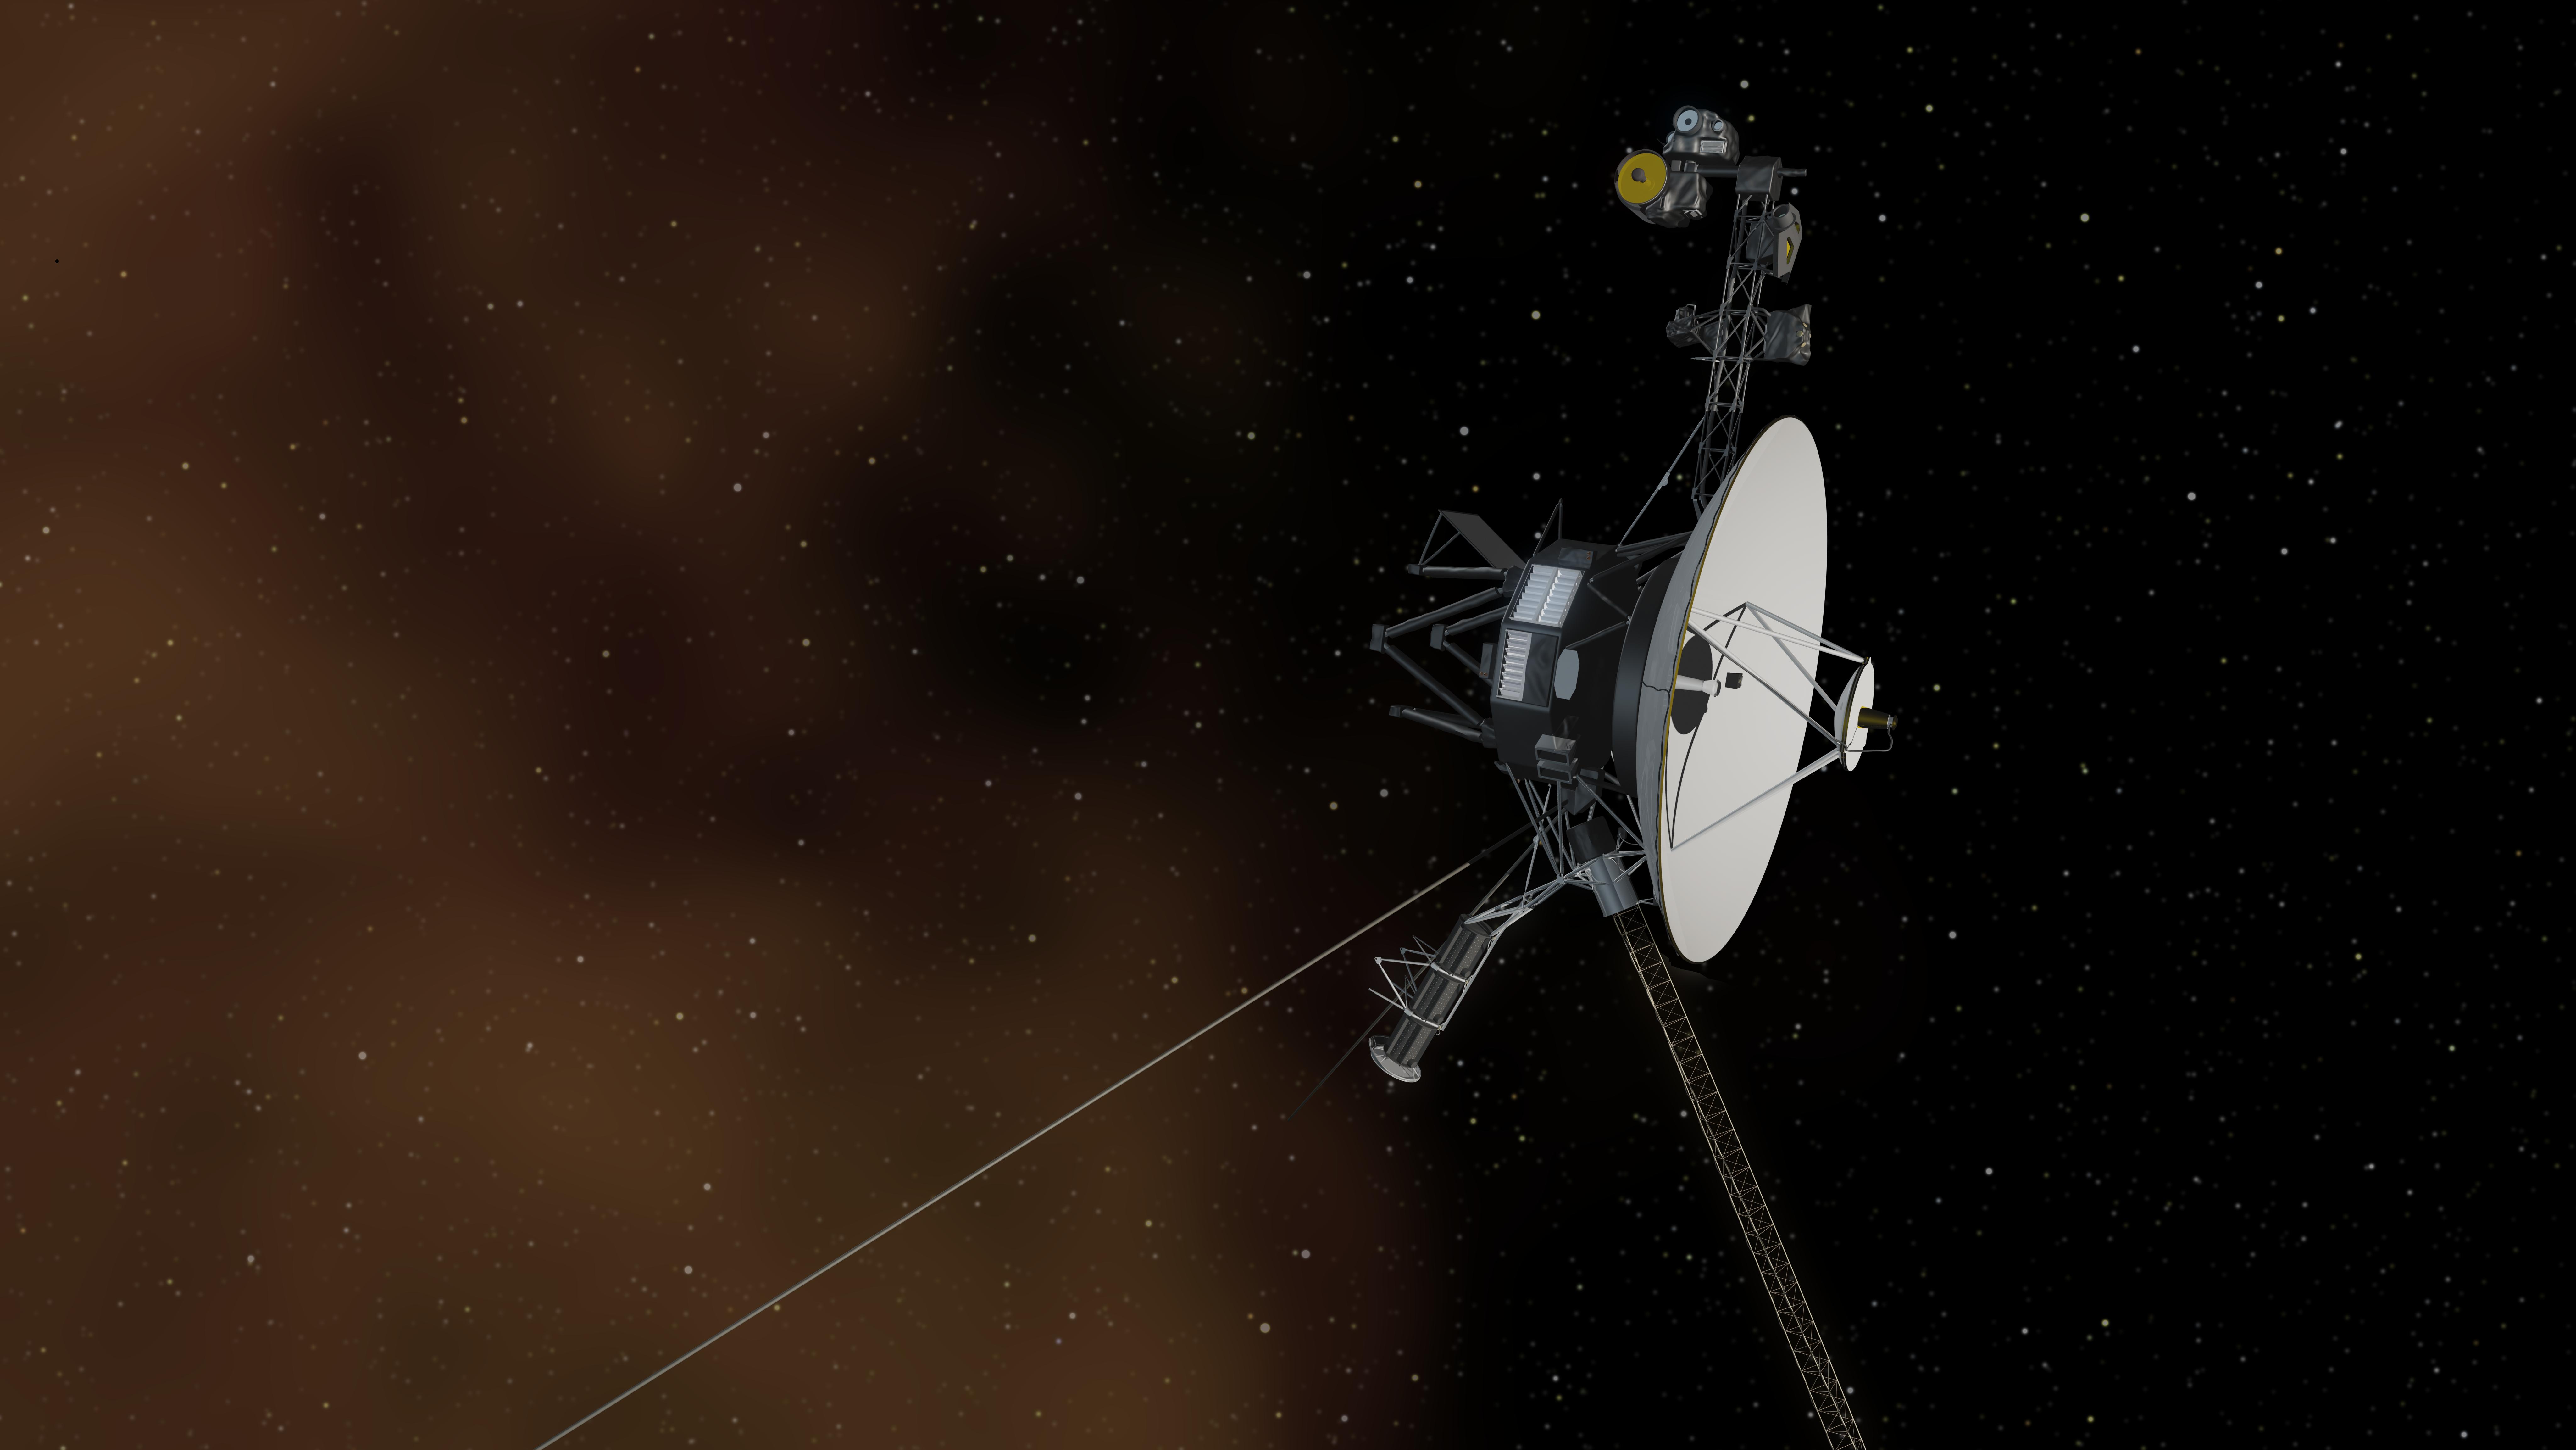 Les dysfonctionnements de communication de Voyager 1 pourraient montrer l’âge du vaisseau spatial